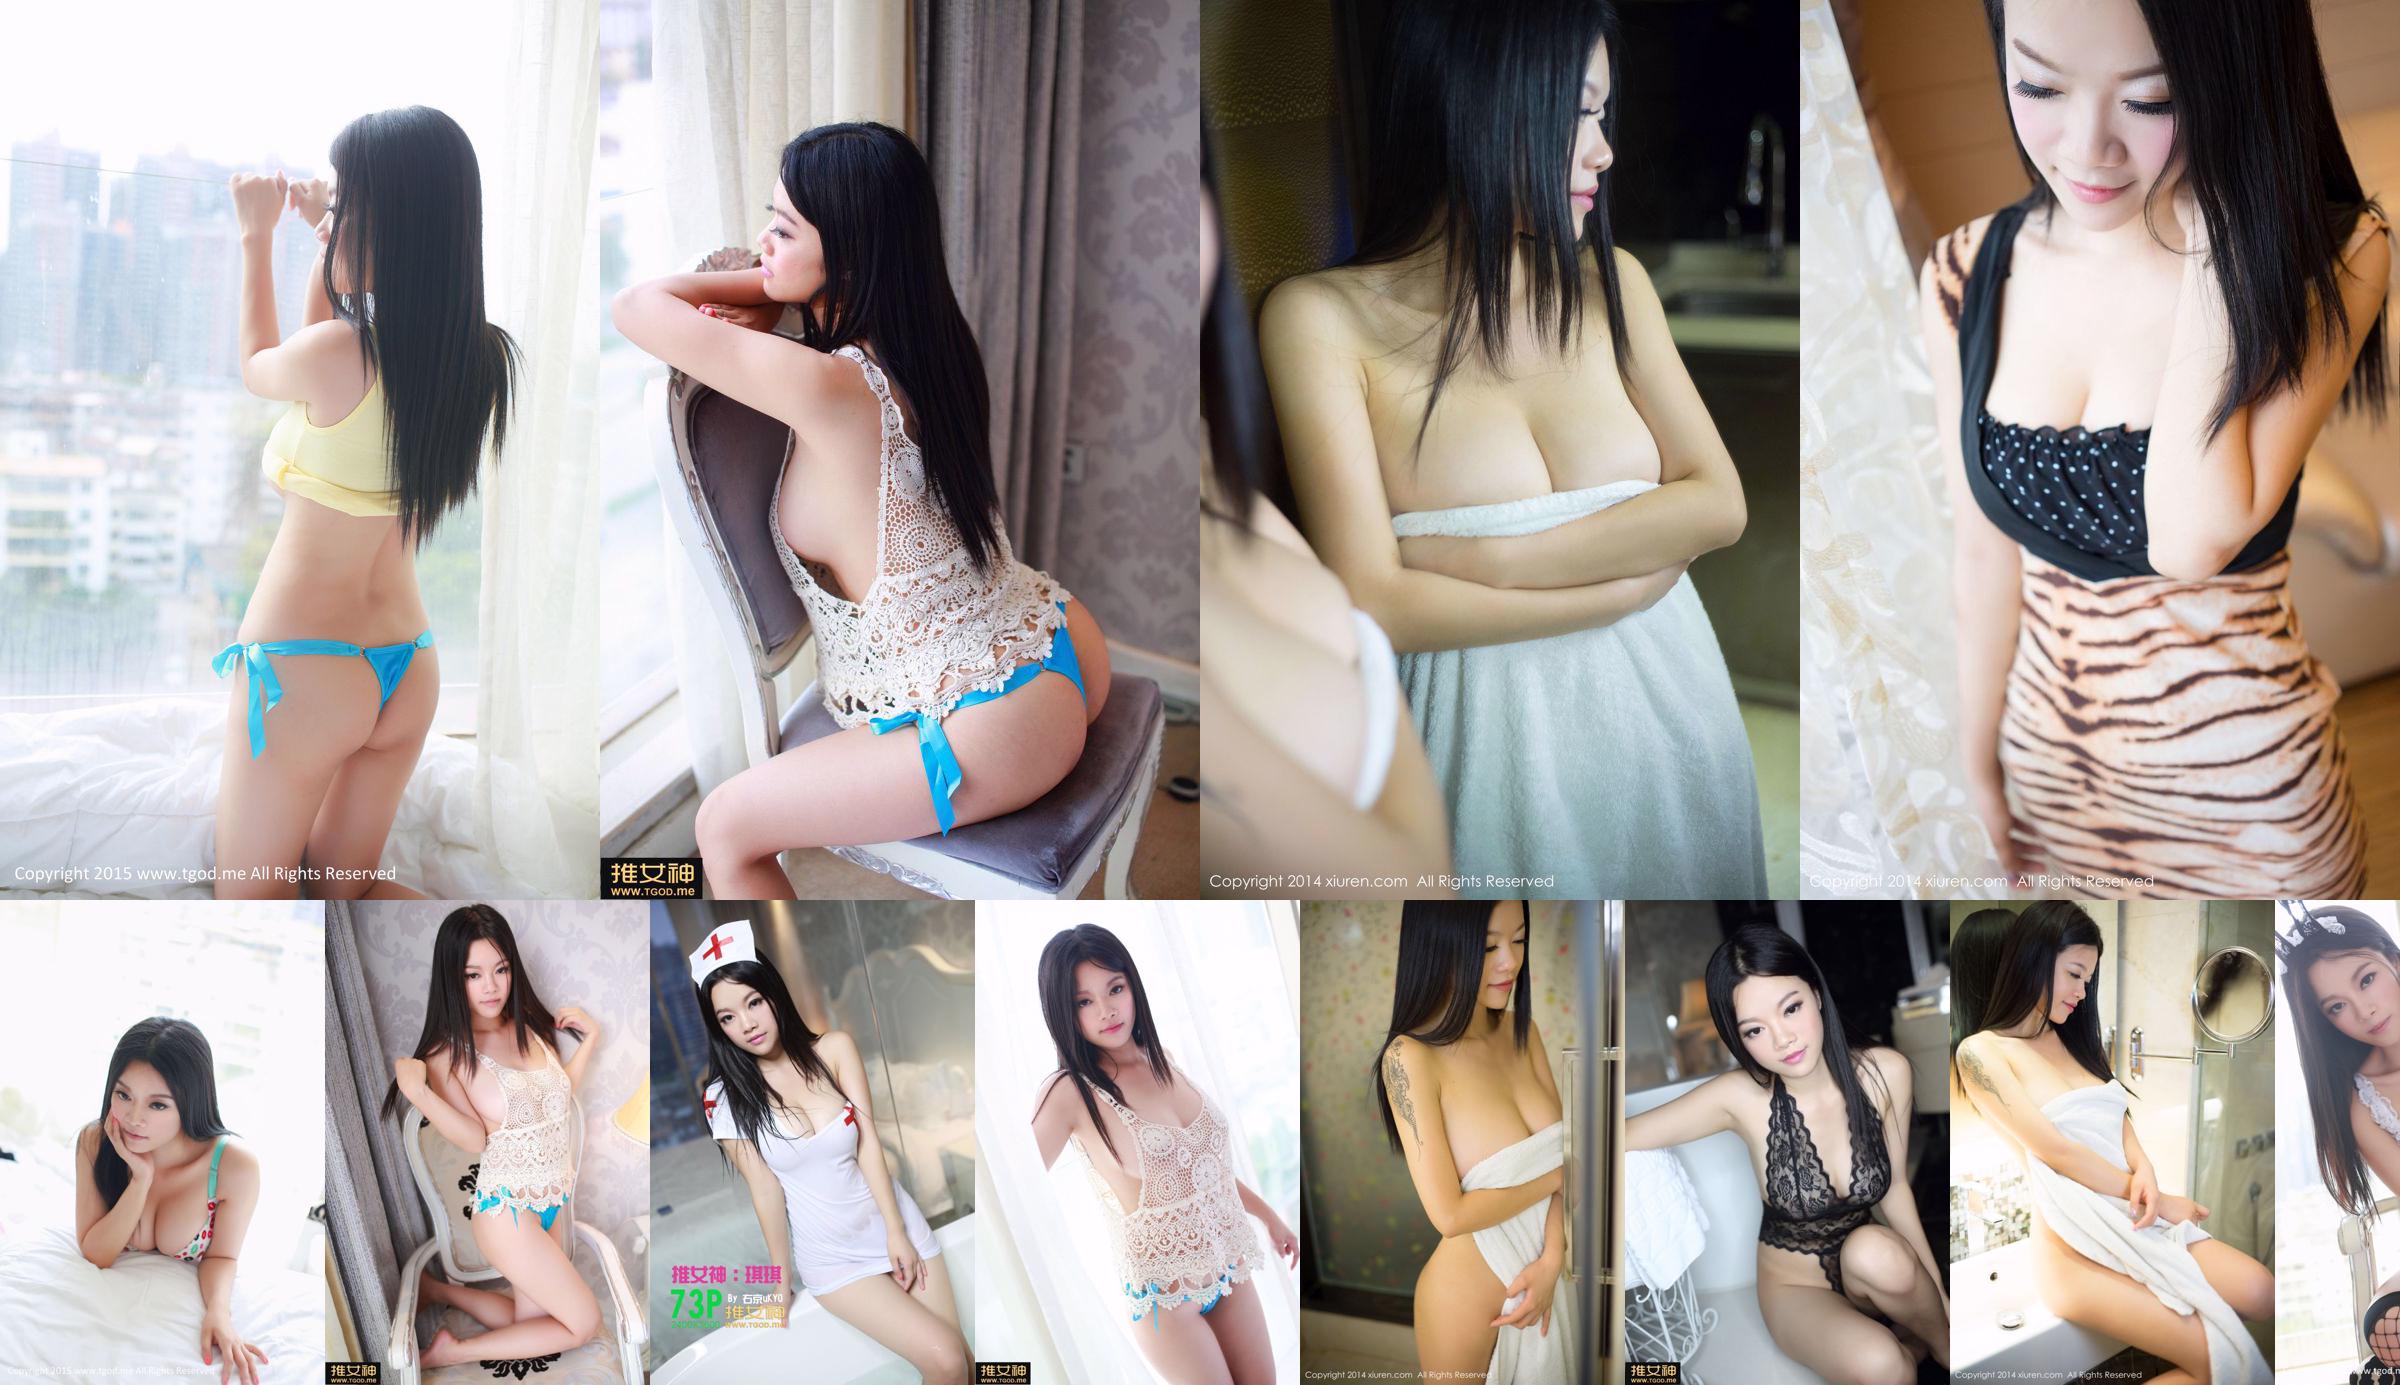 Bunny girl Qiqi Qiqi "Youth Sexy" uniform temptation [TGOD Push Goddess] No.6f7535 Page 1